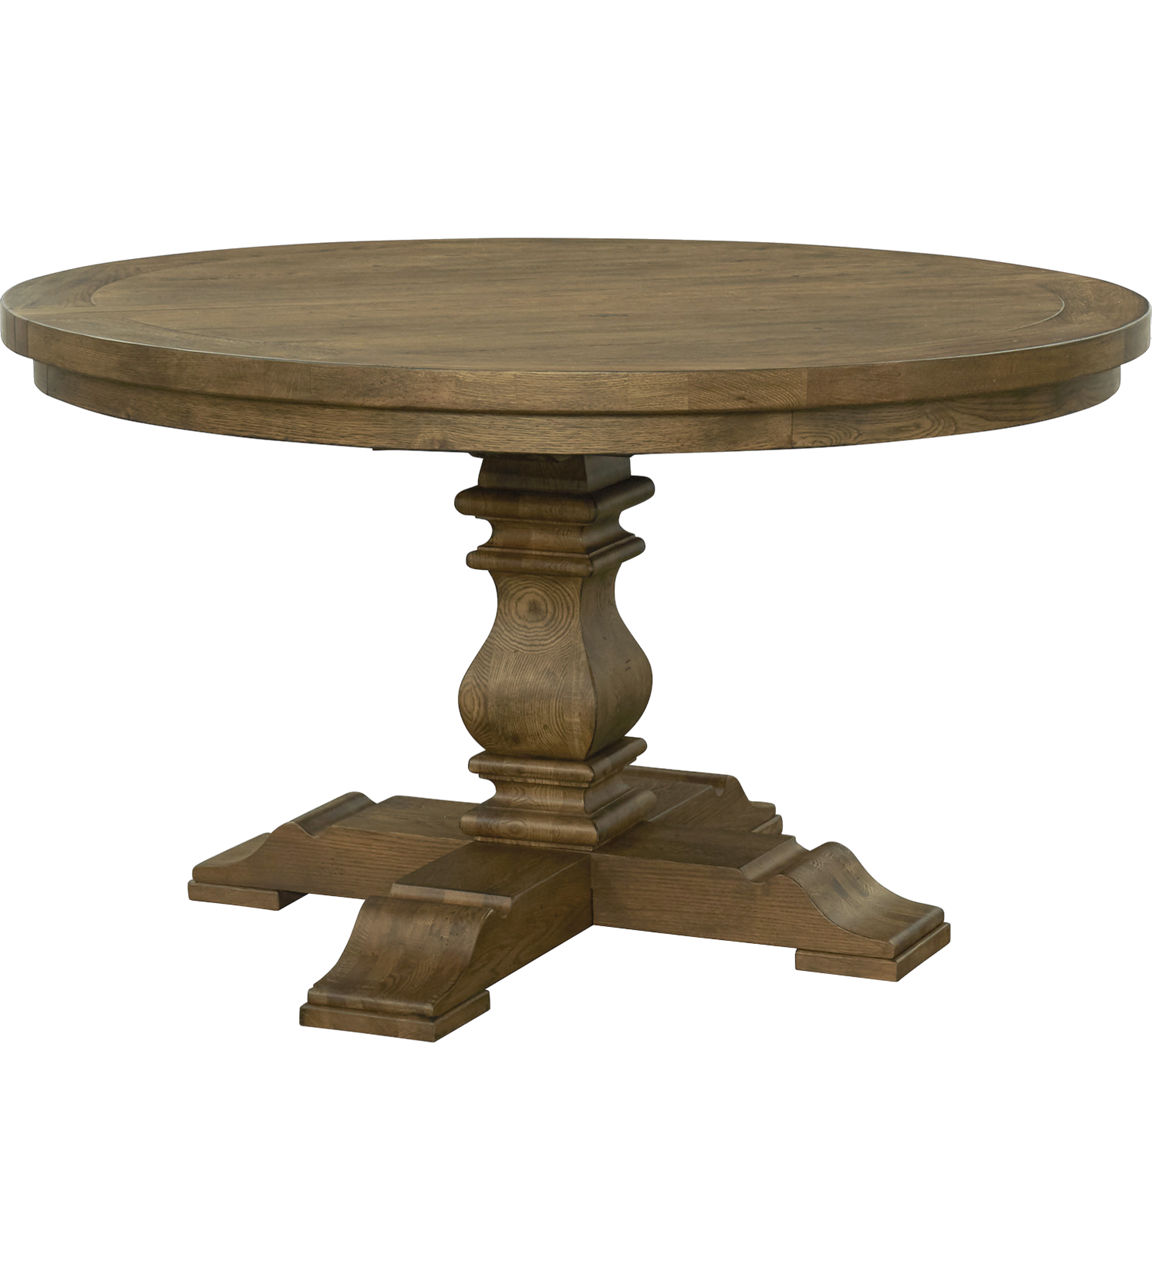 Hawk Round Table, 120-180cm Diameter